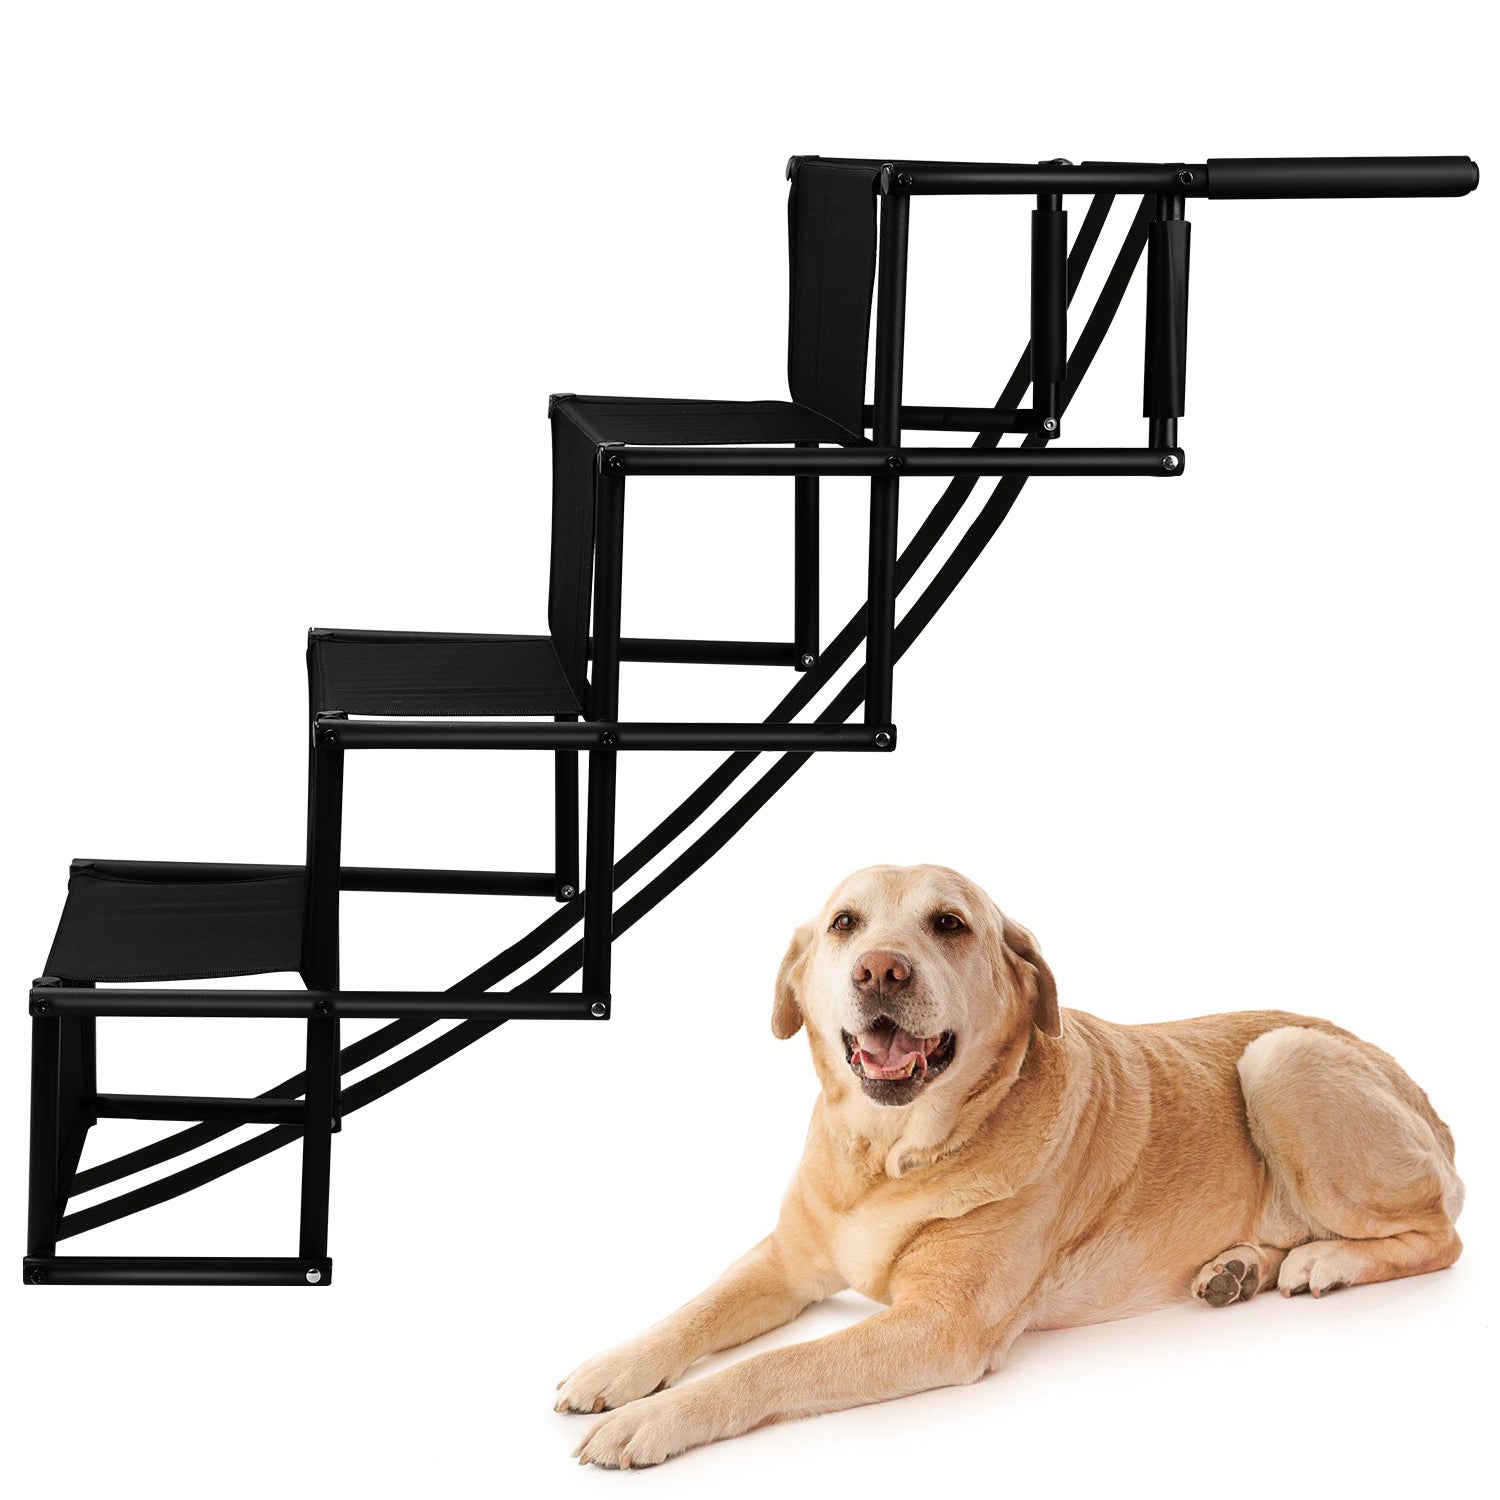 Escalier chien qualité - Escaliers chien agés - Escalier 2 marches